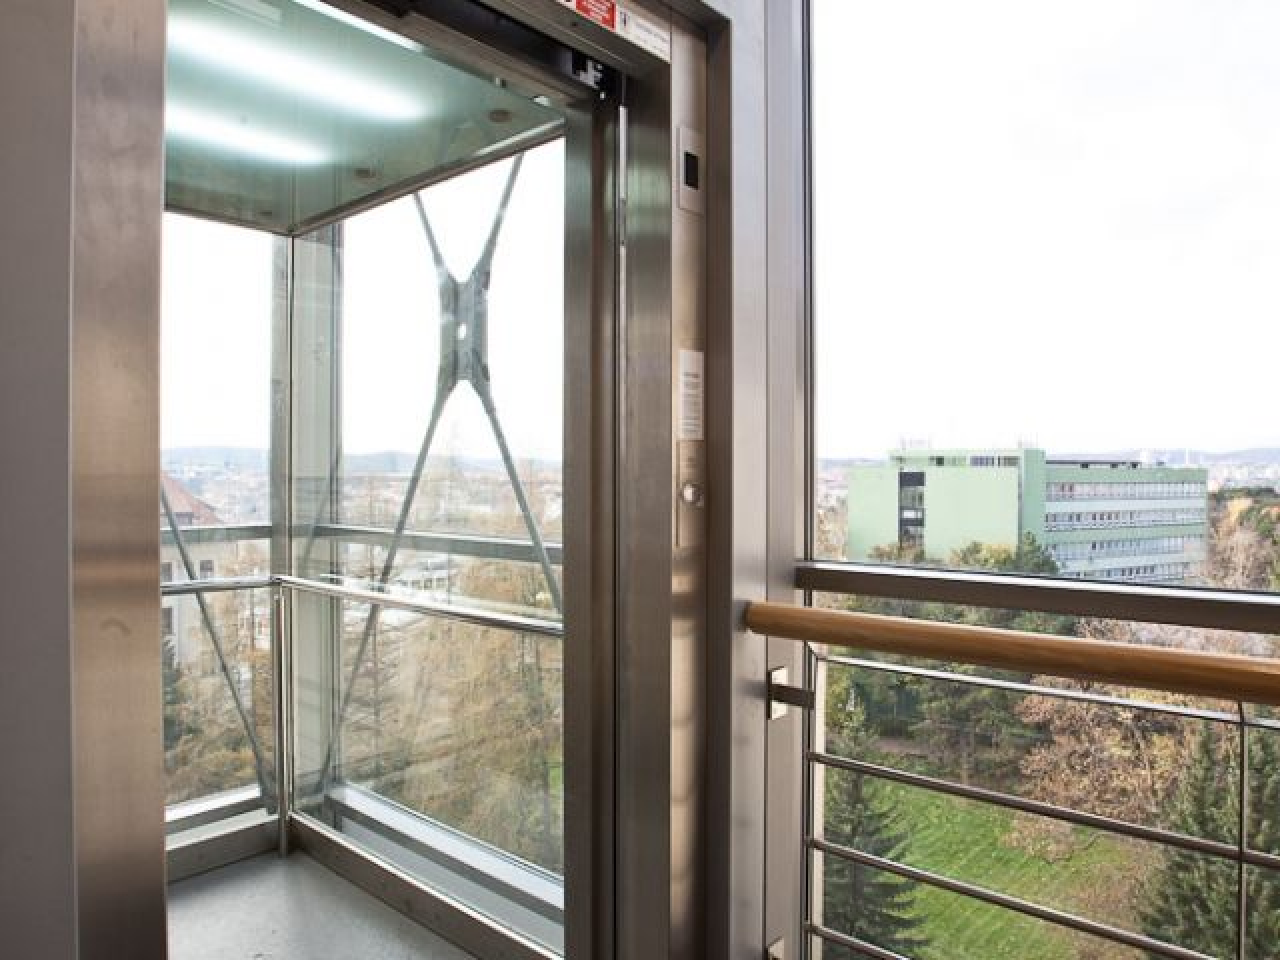 Výtah vyrobený firmou Výtahy, s.r.o. pro MZLU v Brně - možnost uplatnění absolventa oboru